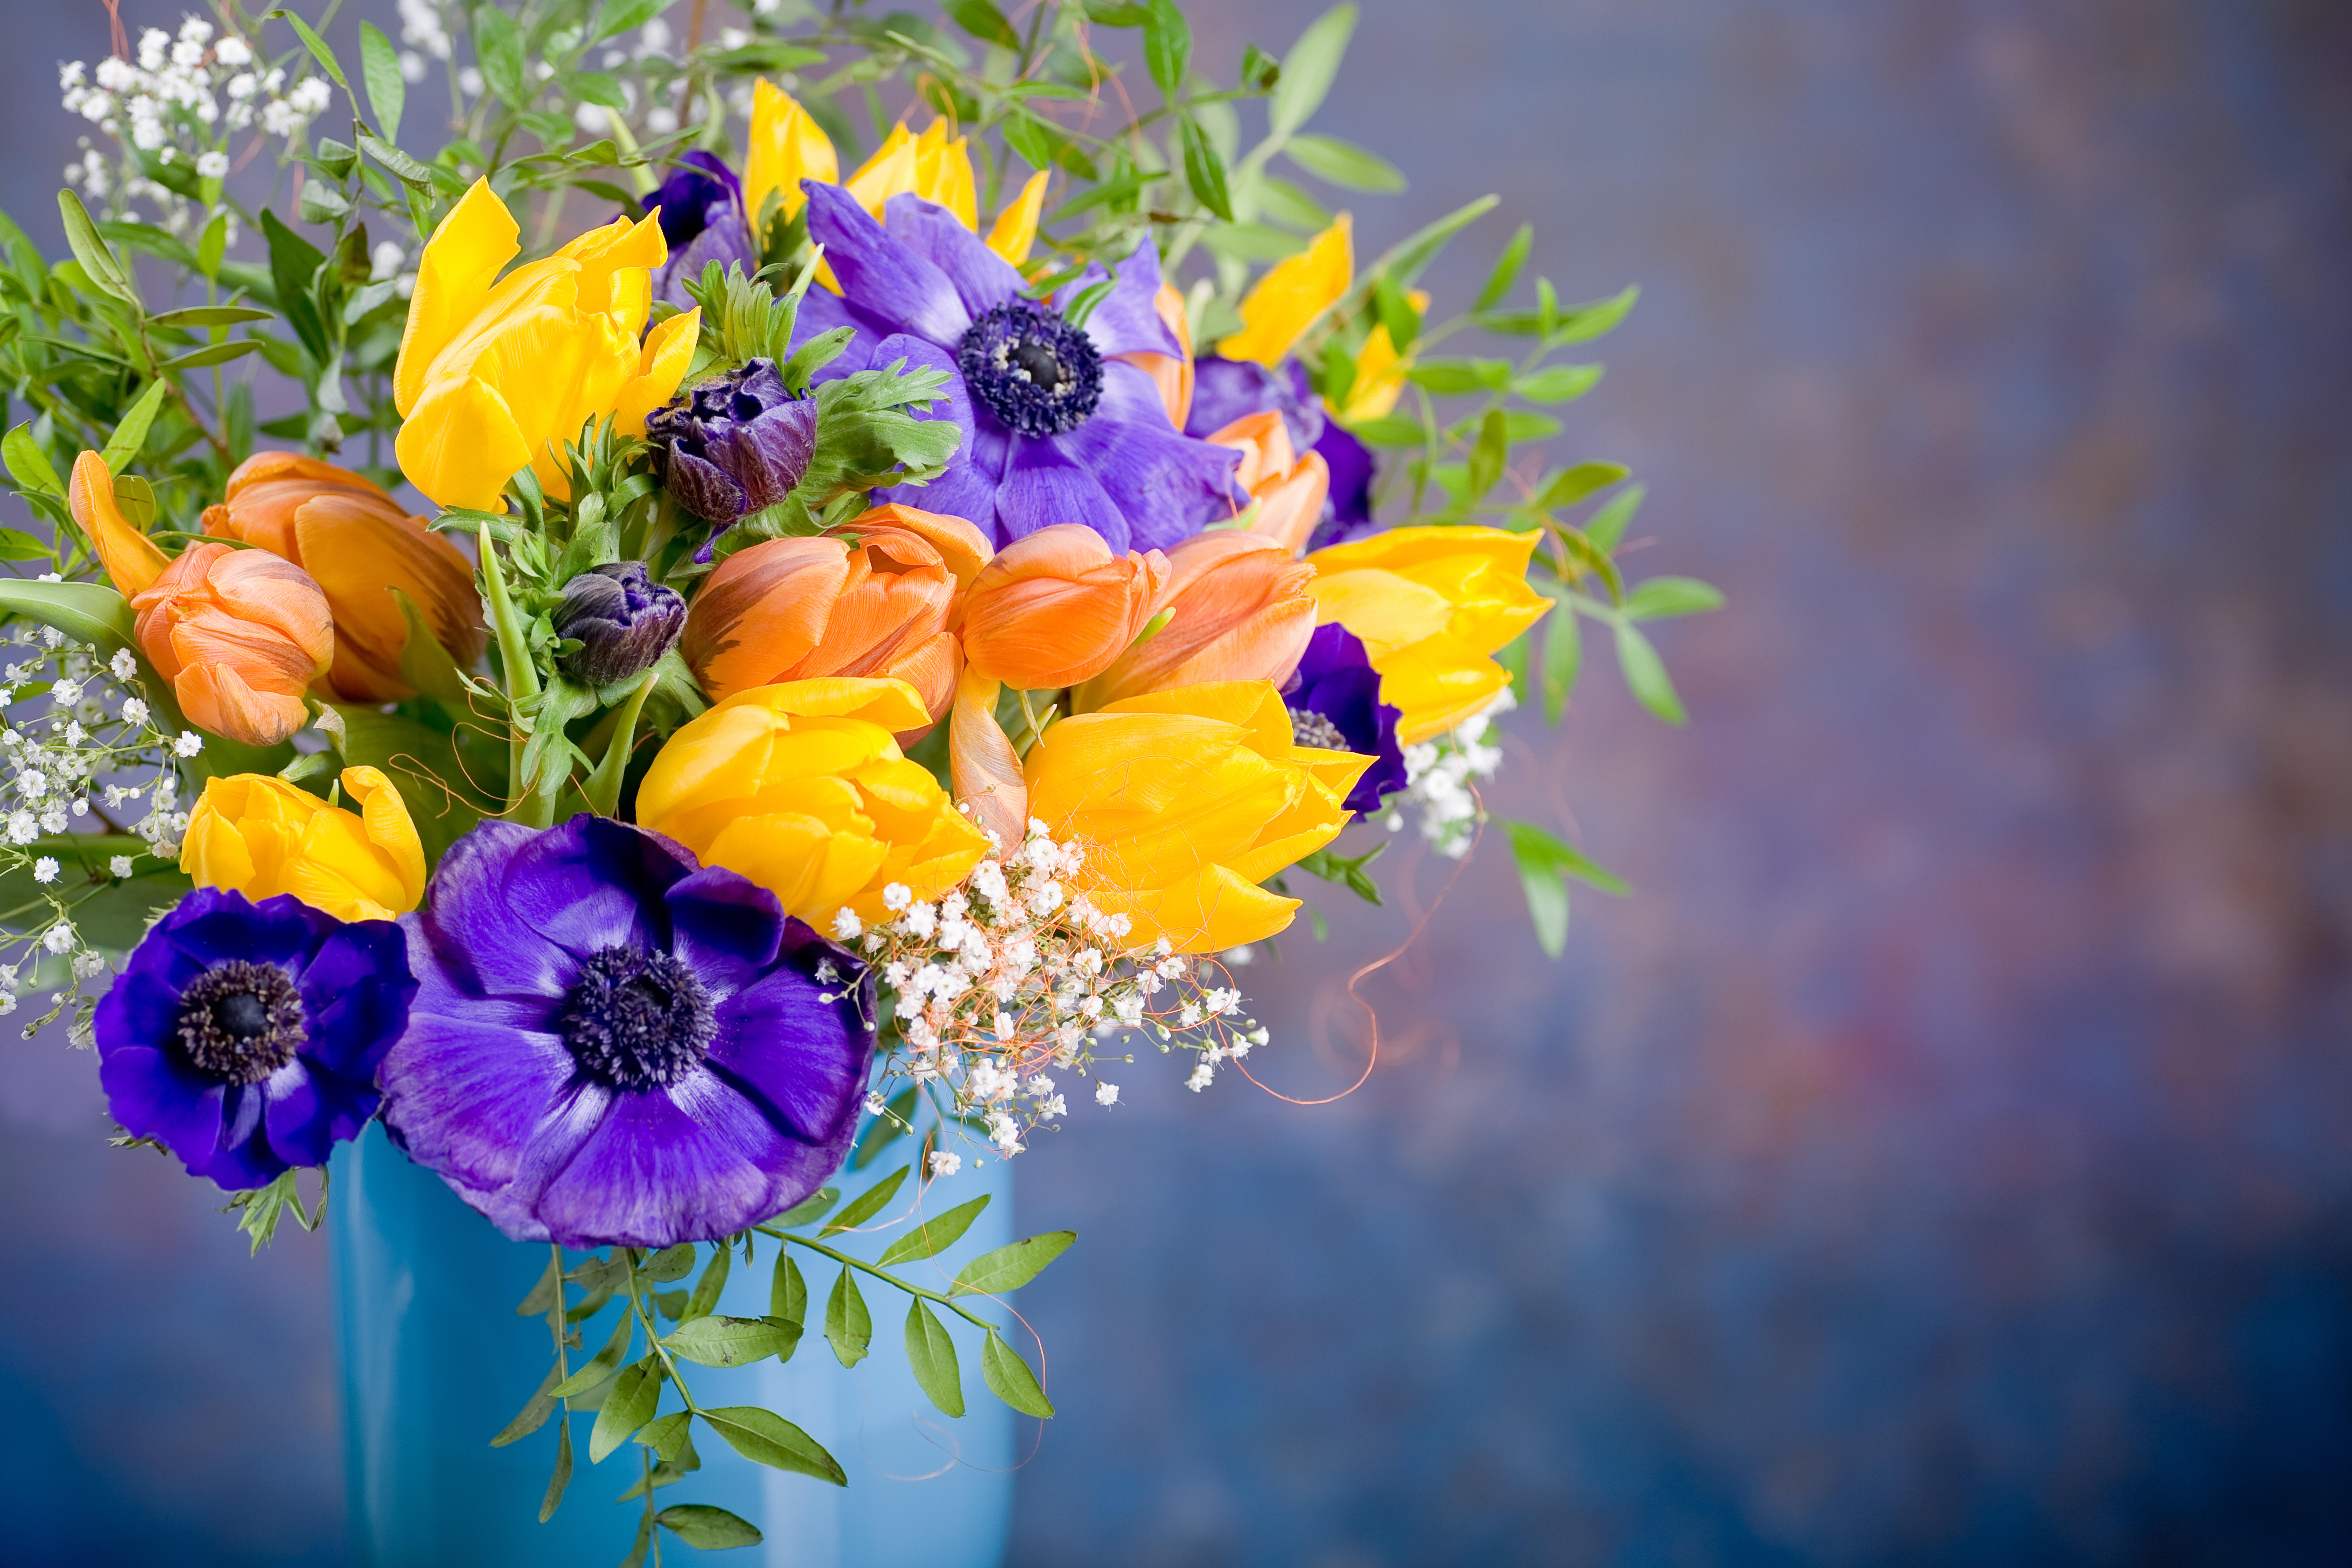 Фото тюльпаны флора красивый букет - бесплатные картинки на Fonwall